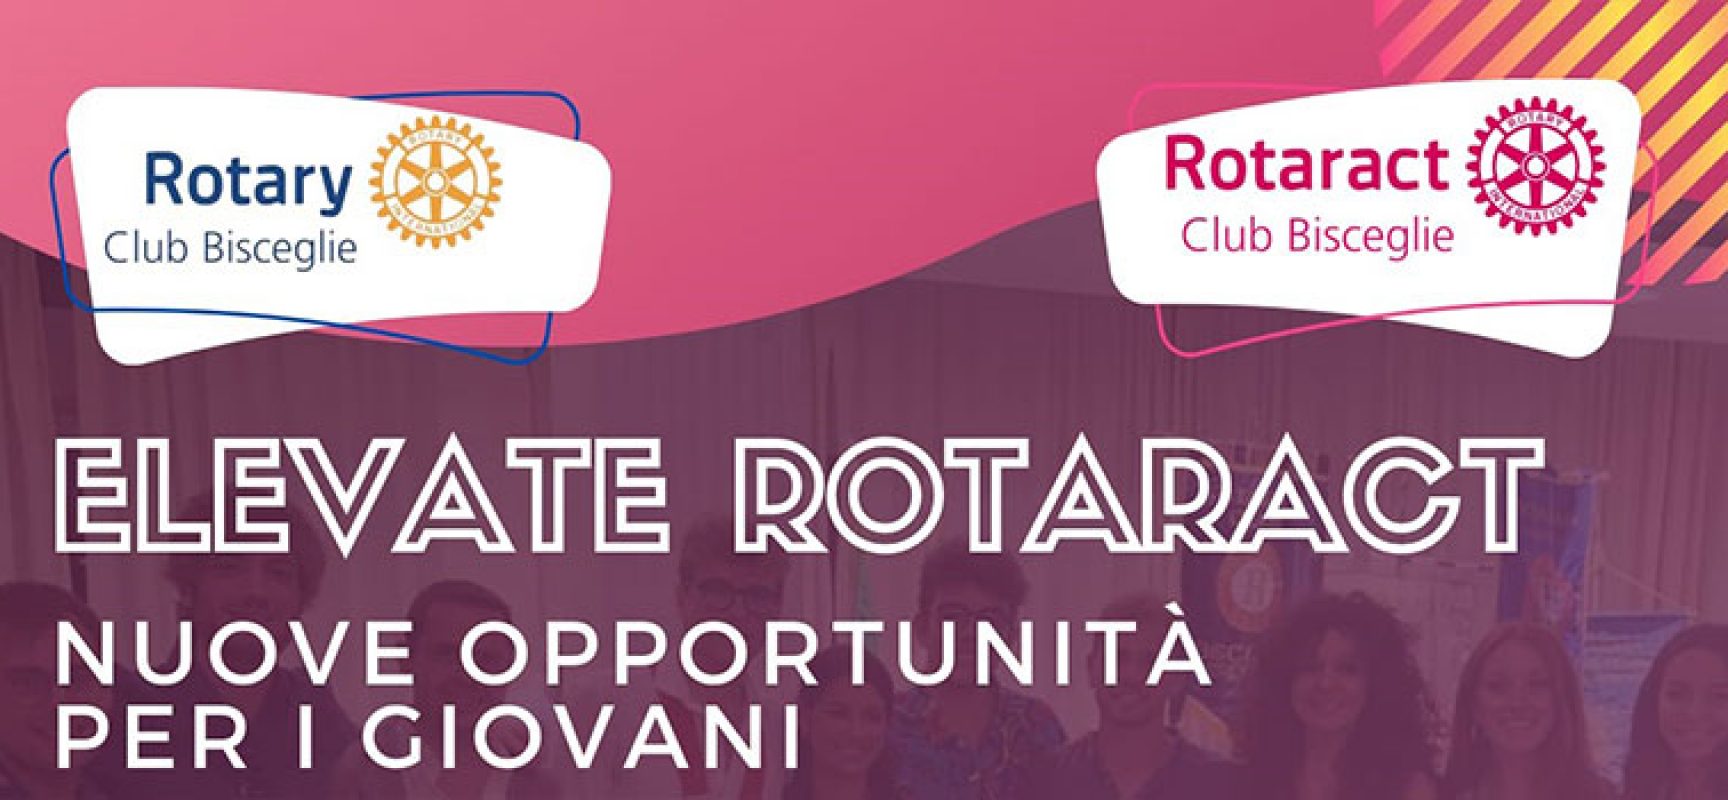 Elevate Rotaract, un incontro sulle opportunità offerte ai giovani